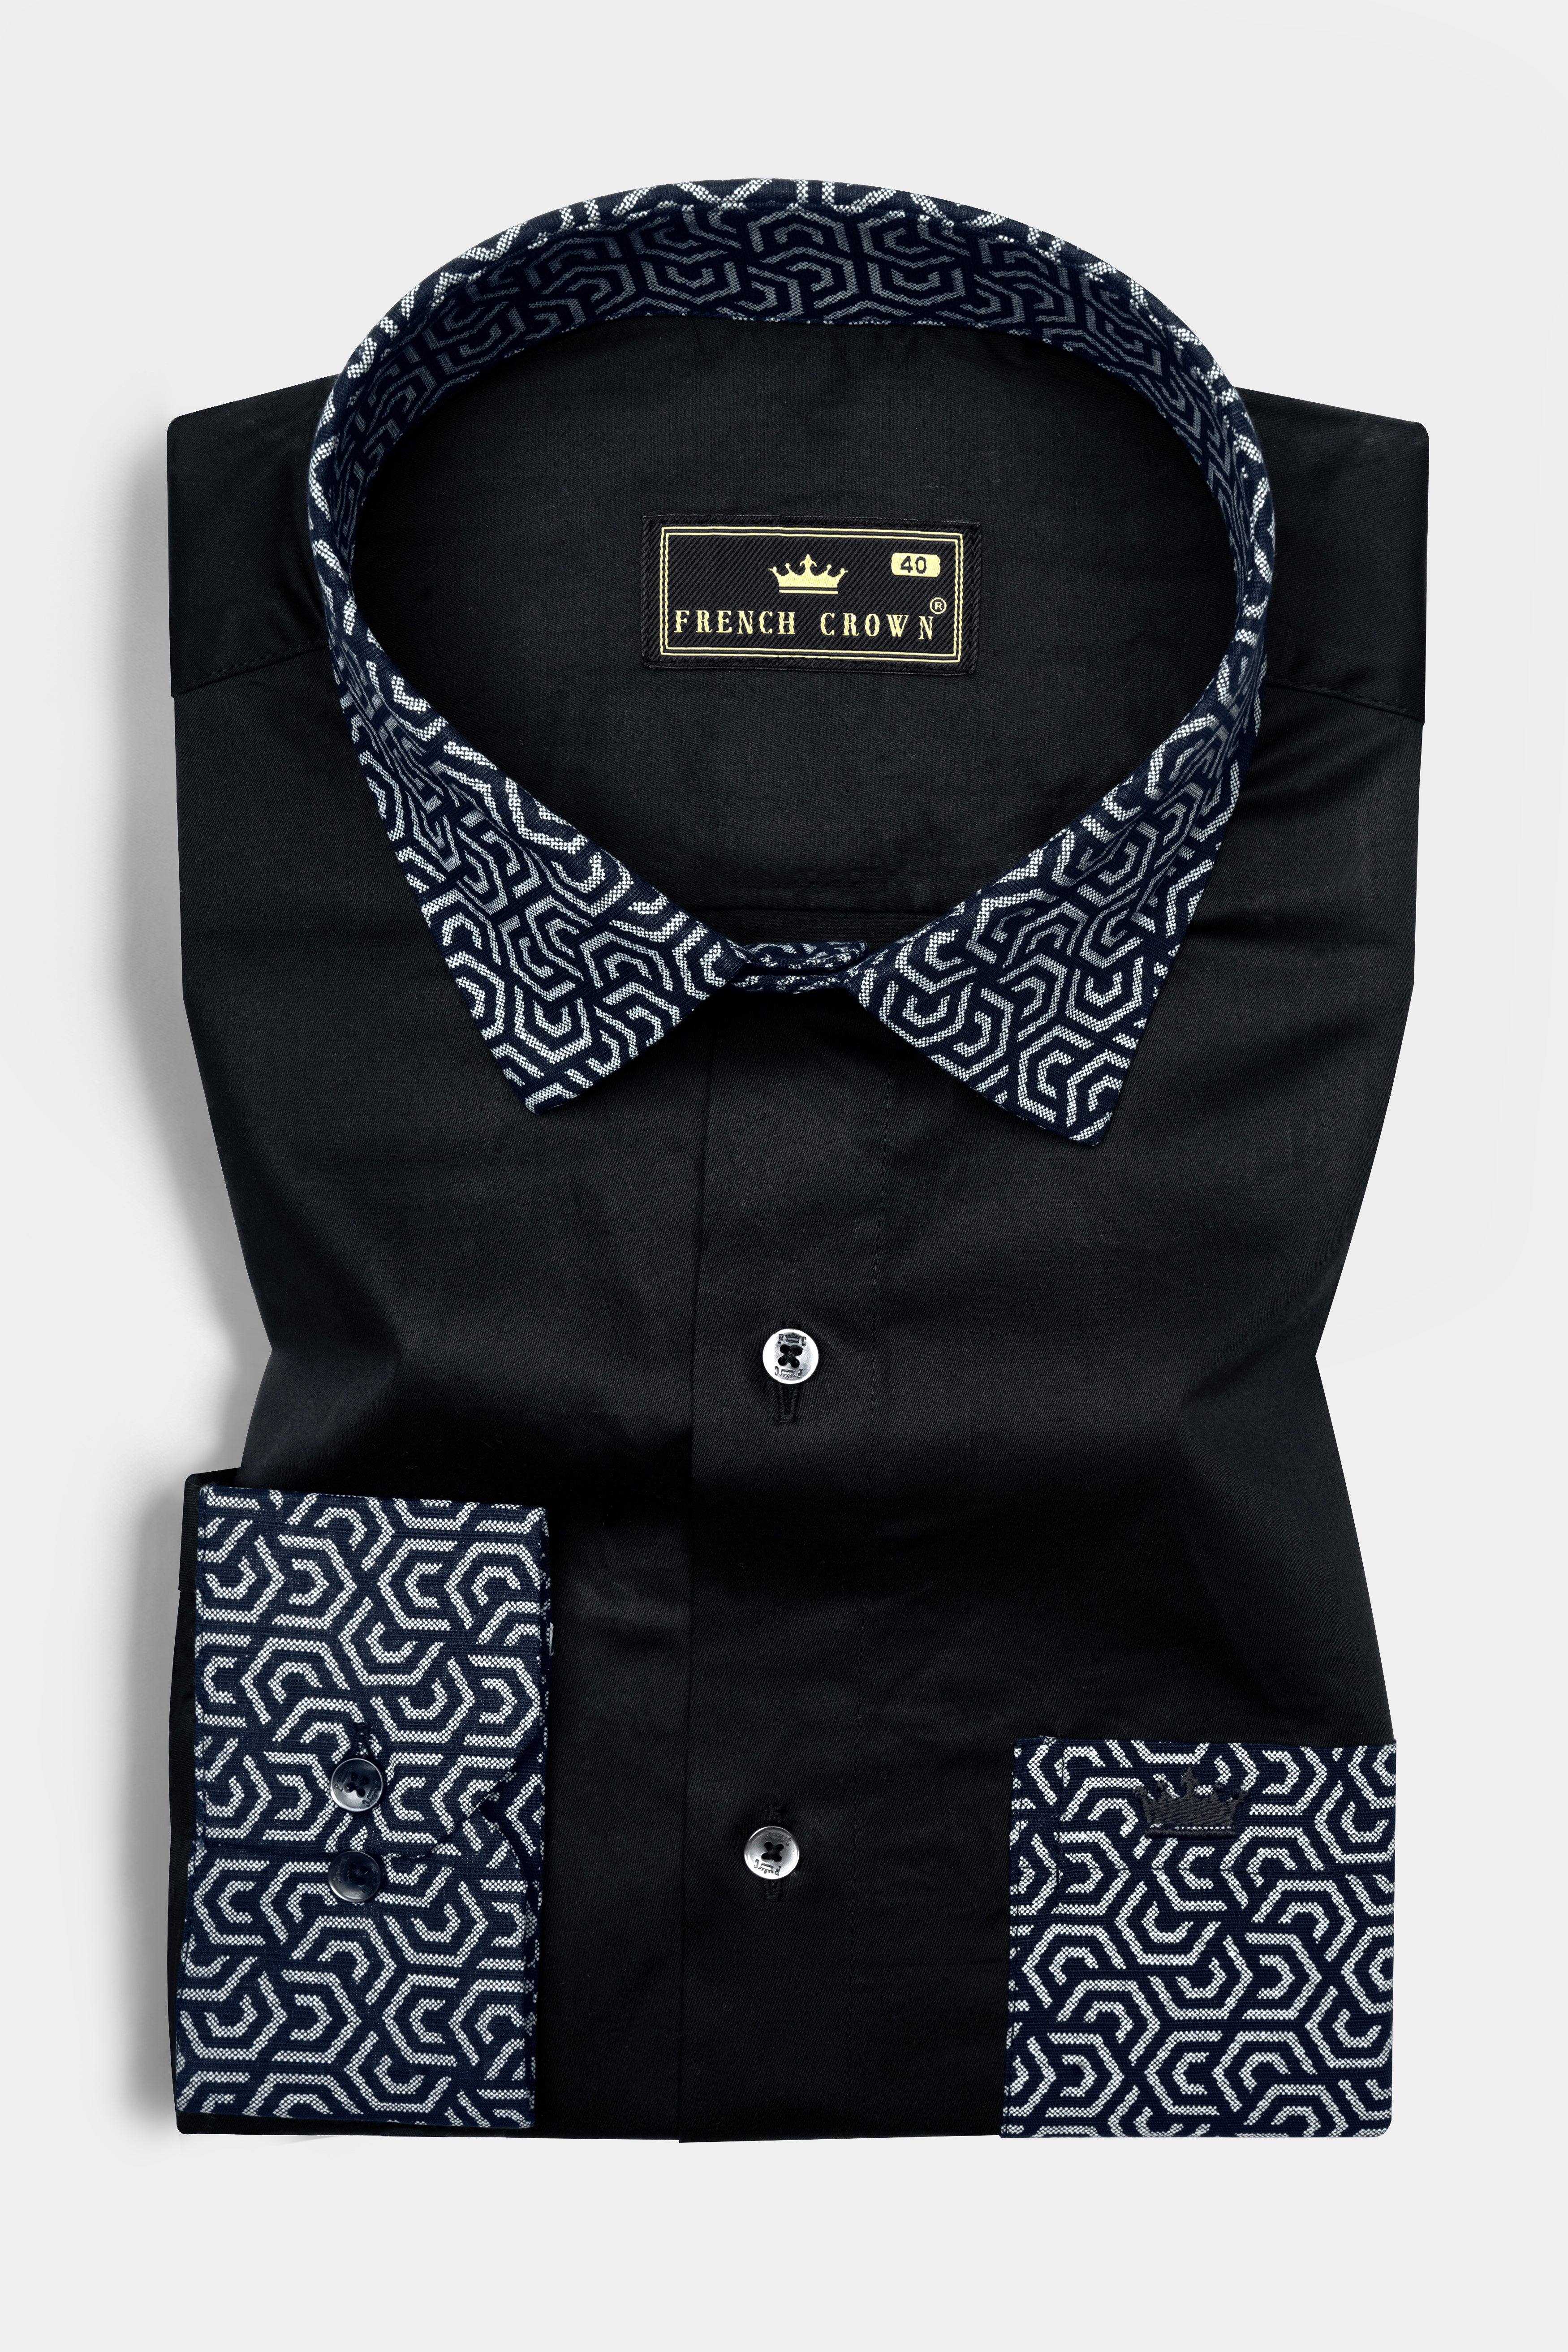 Jade Black Super Soft Premium Cotton Designer shirt